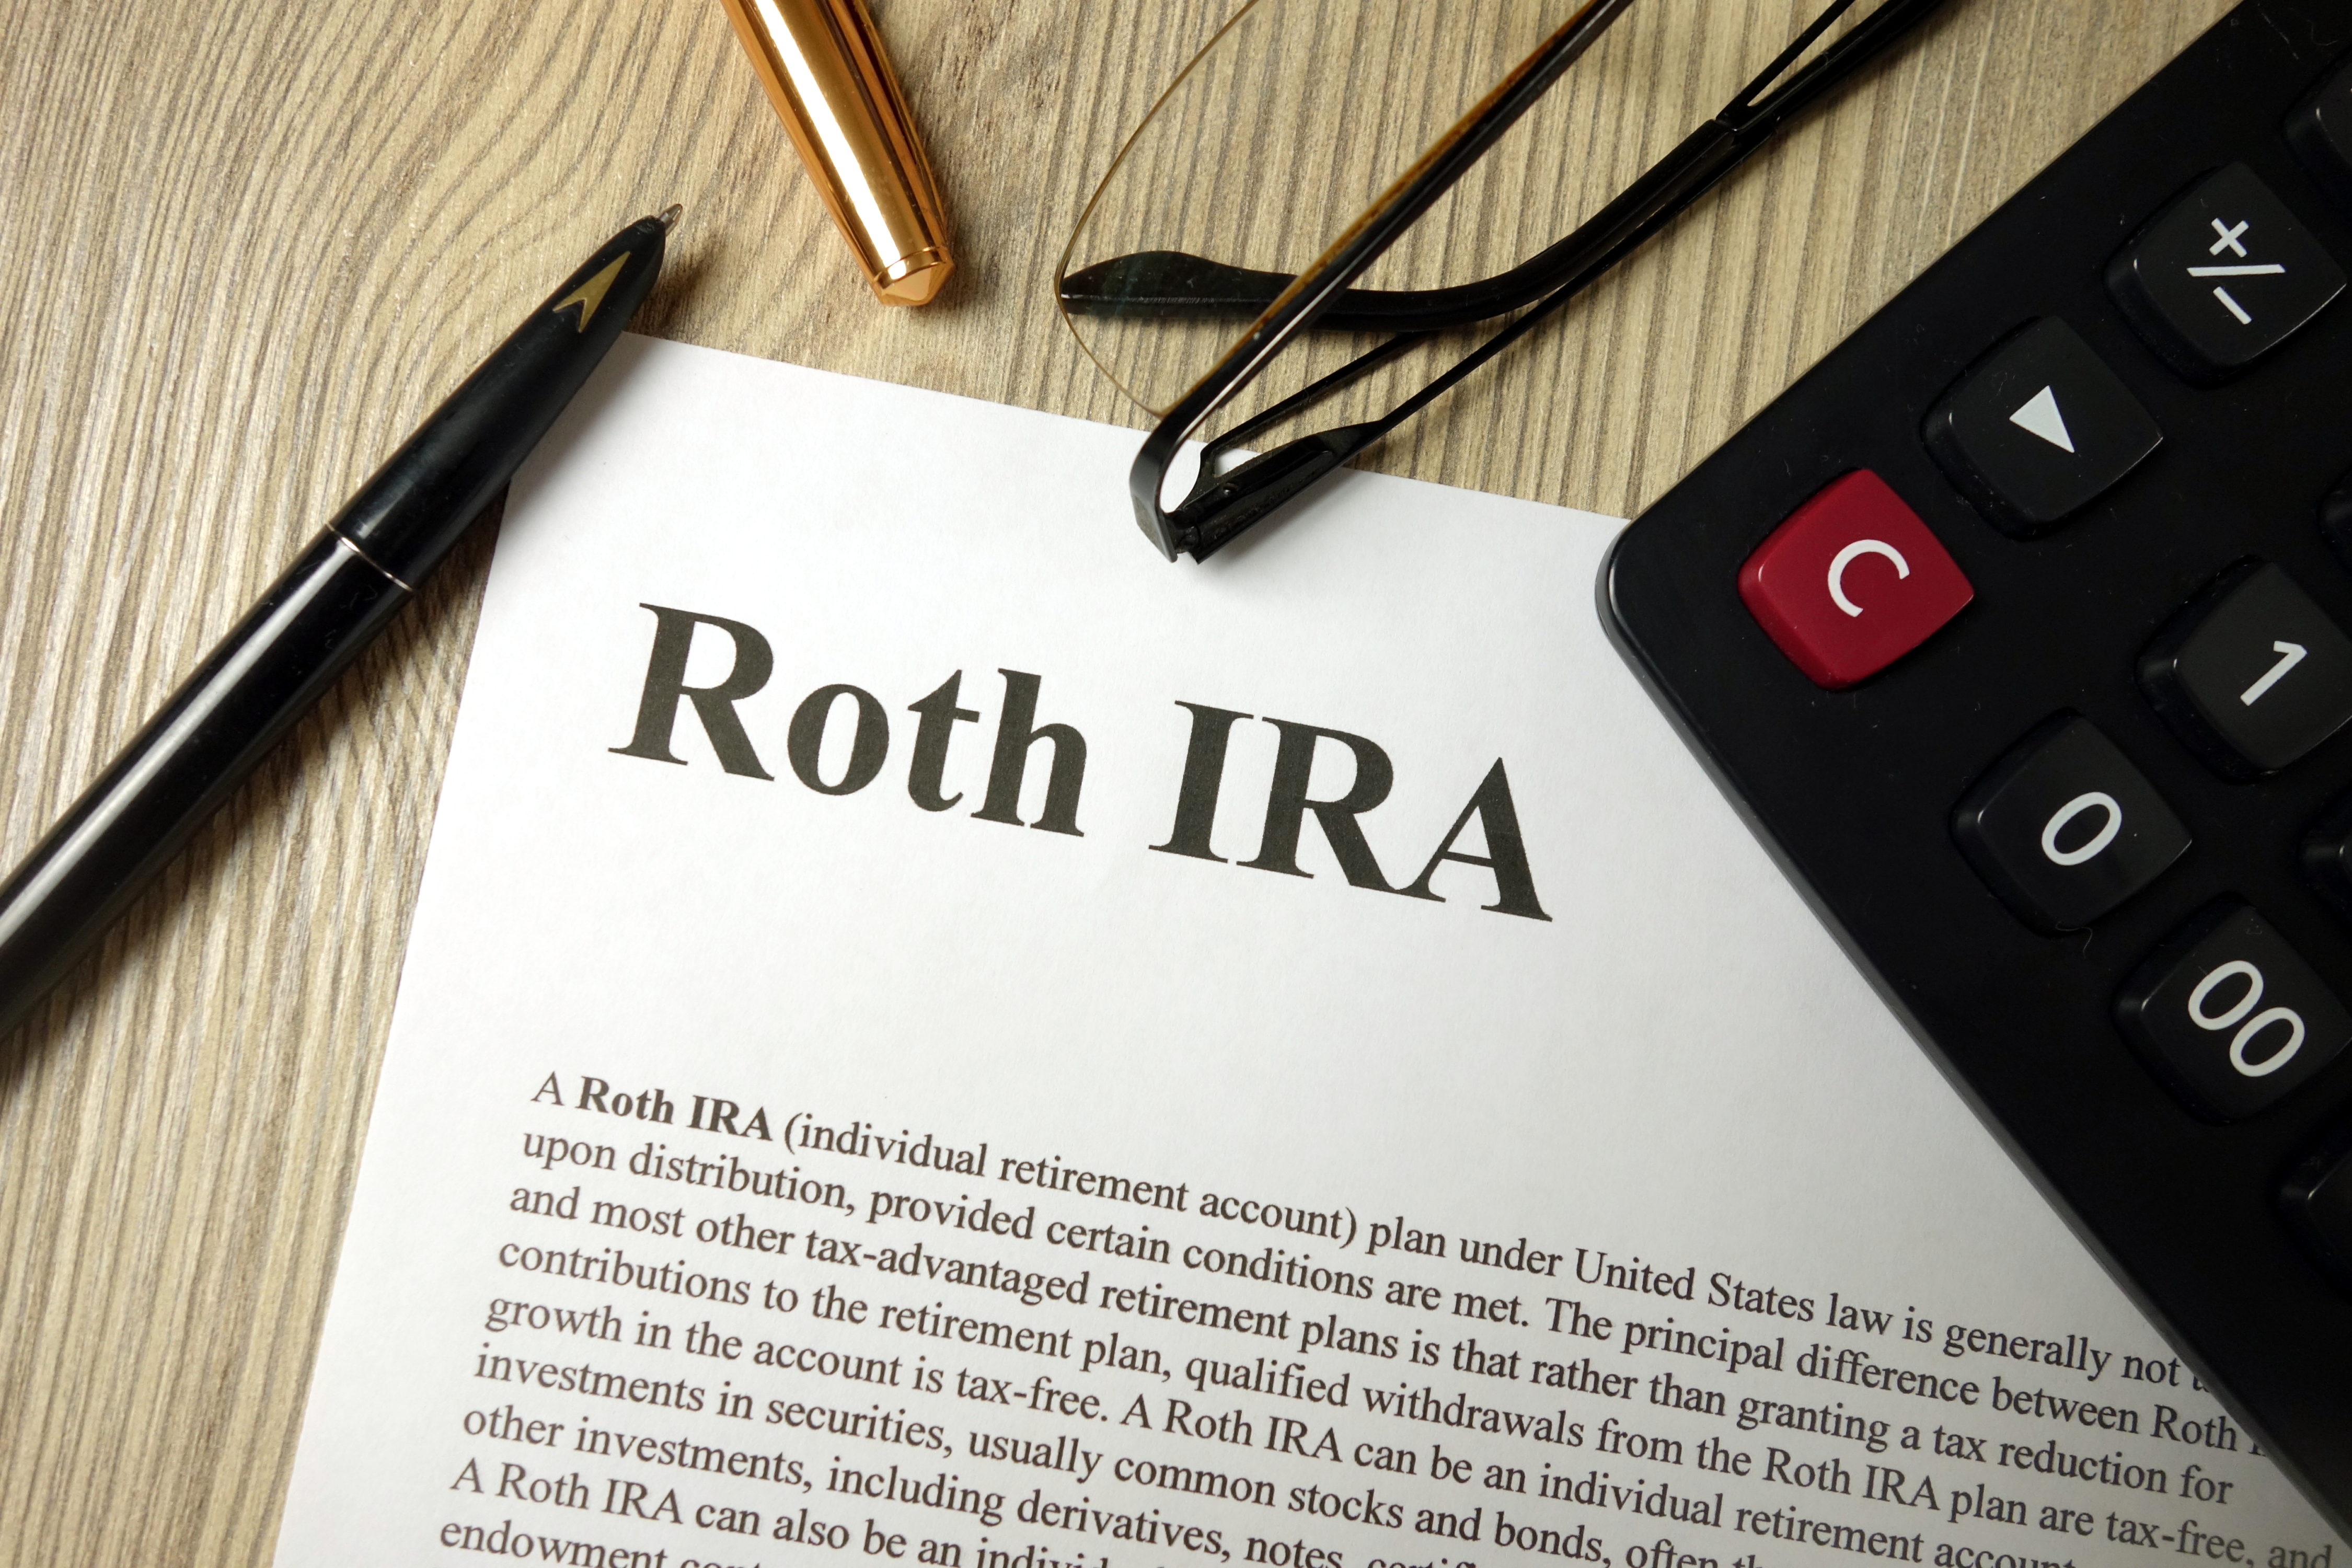 Examining the Roth IRA